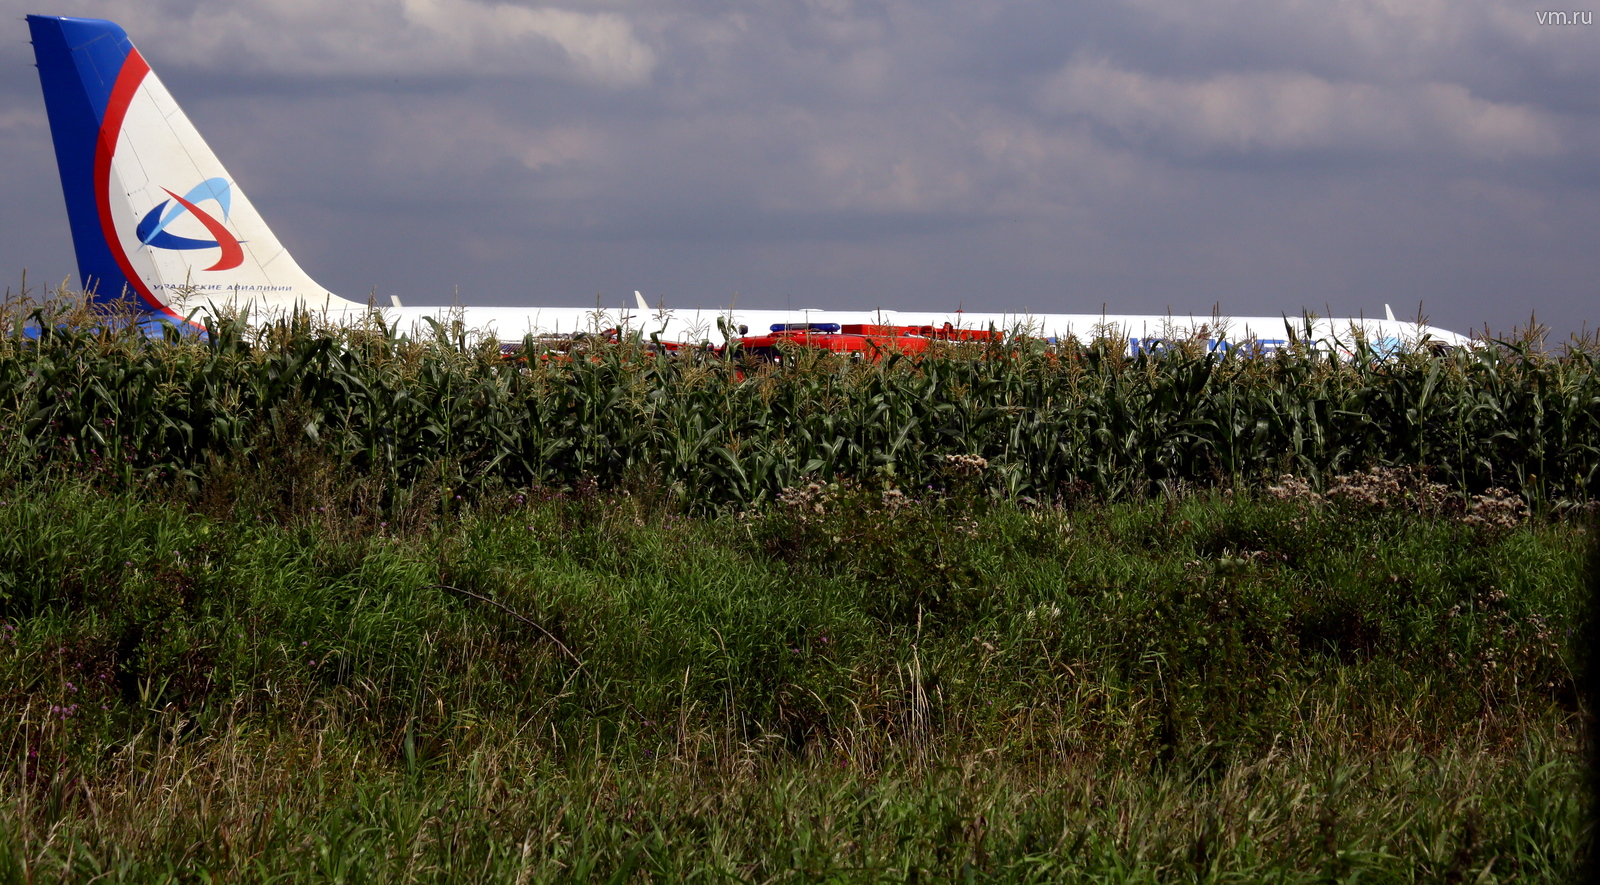 МАК назвал причины вынужденной посадки самолета в кукурузном поле